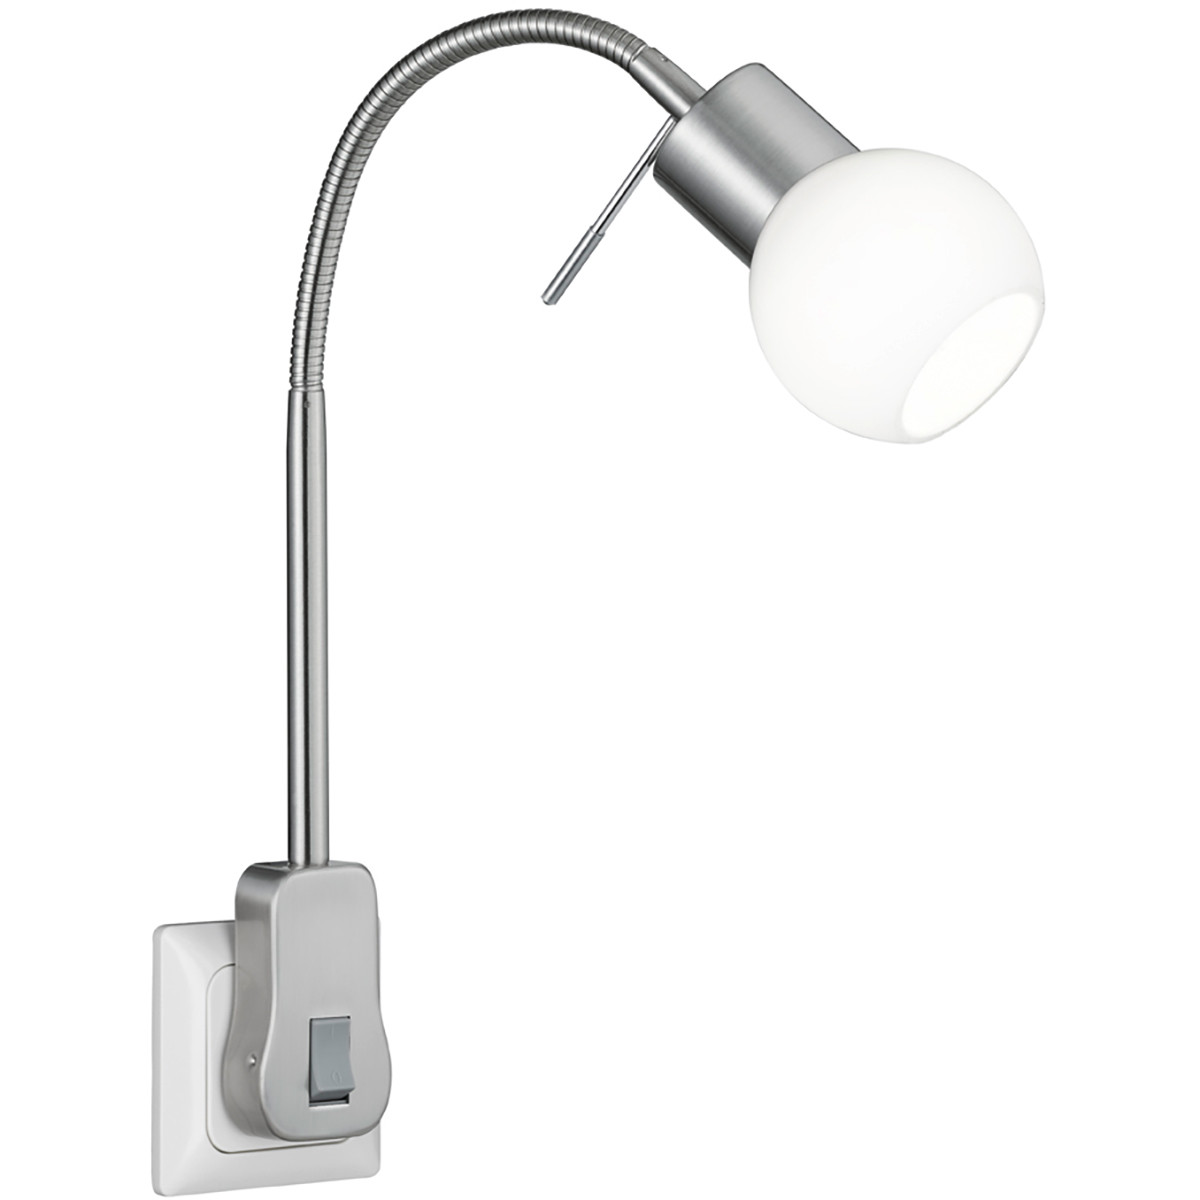 Stekkerlamp met Schakelaar - Trion Frido - G9 Fitting - 3W - Warm Wit 3000K - Dimbaar - Mat Nikkel - Aluminium product afbeelding